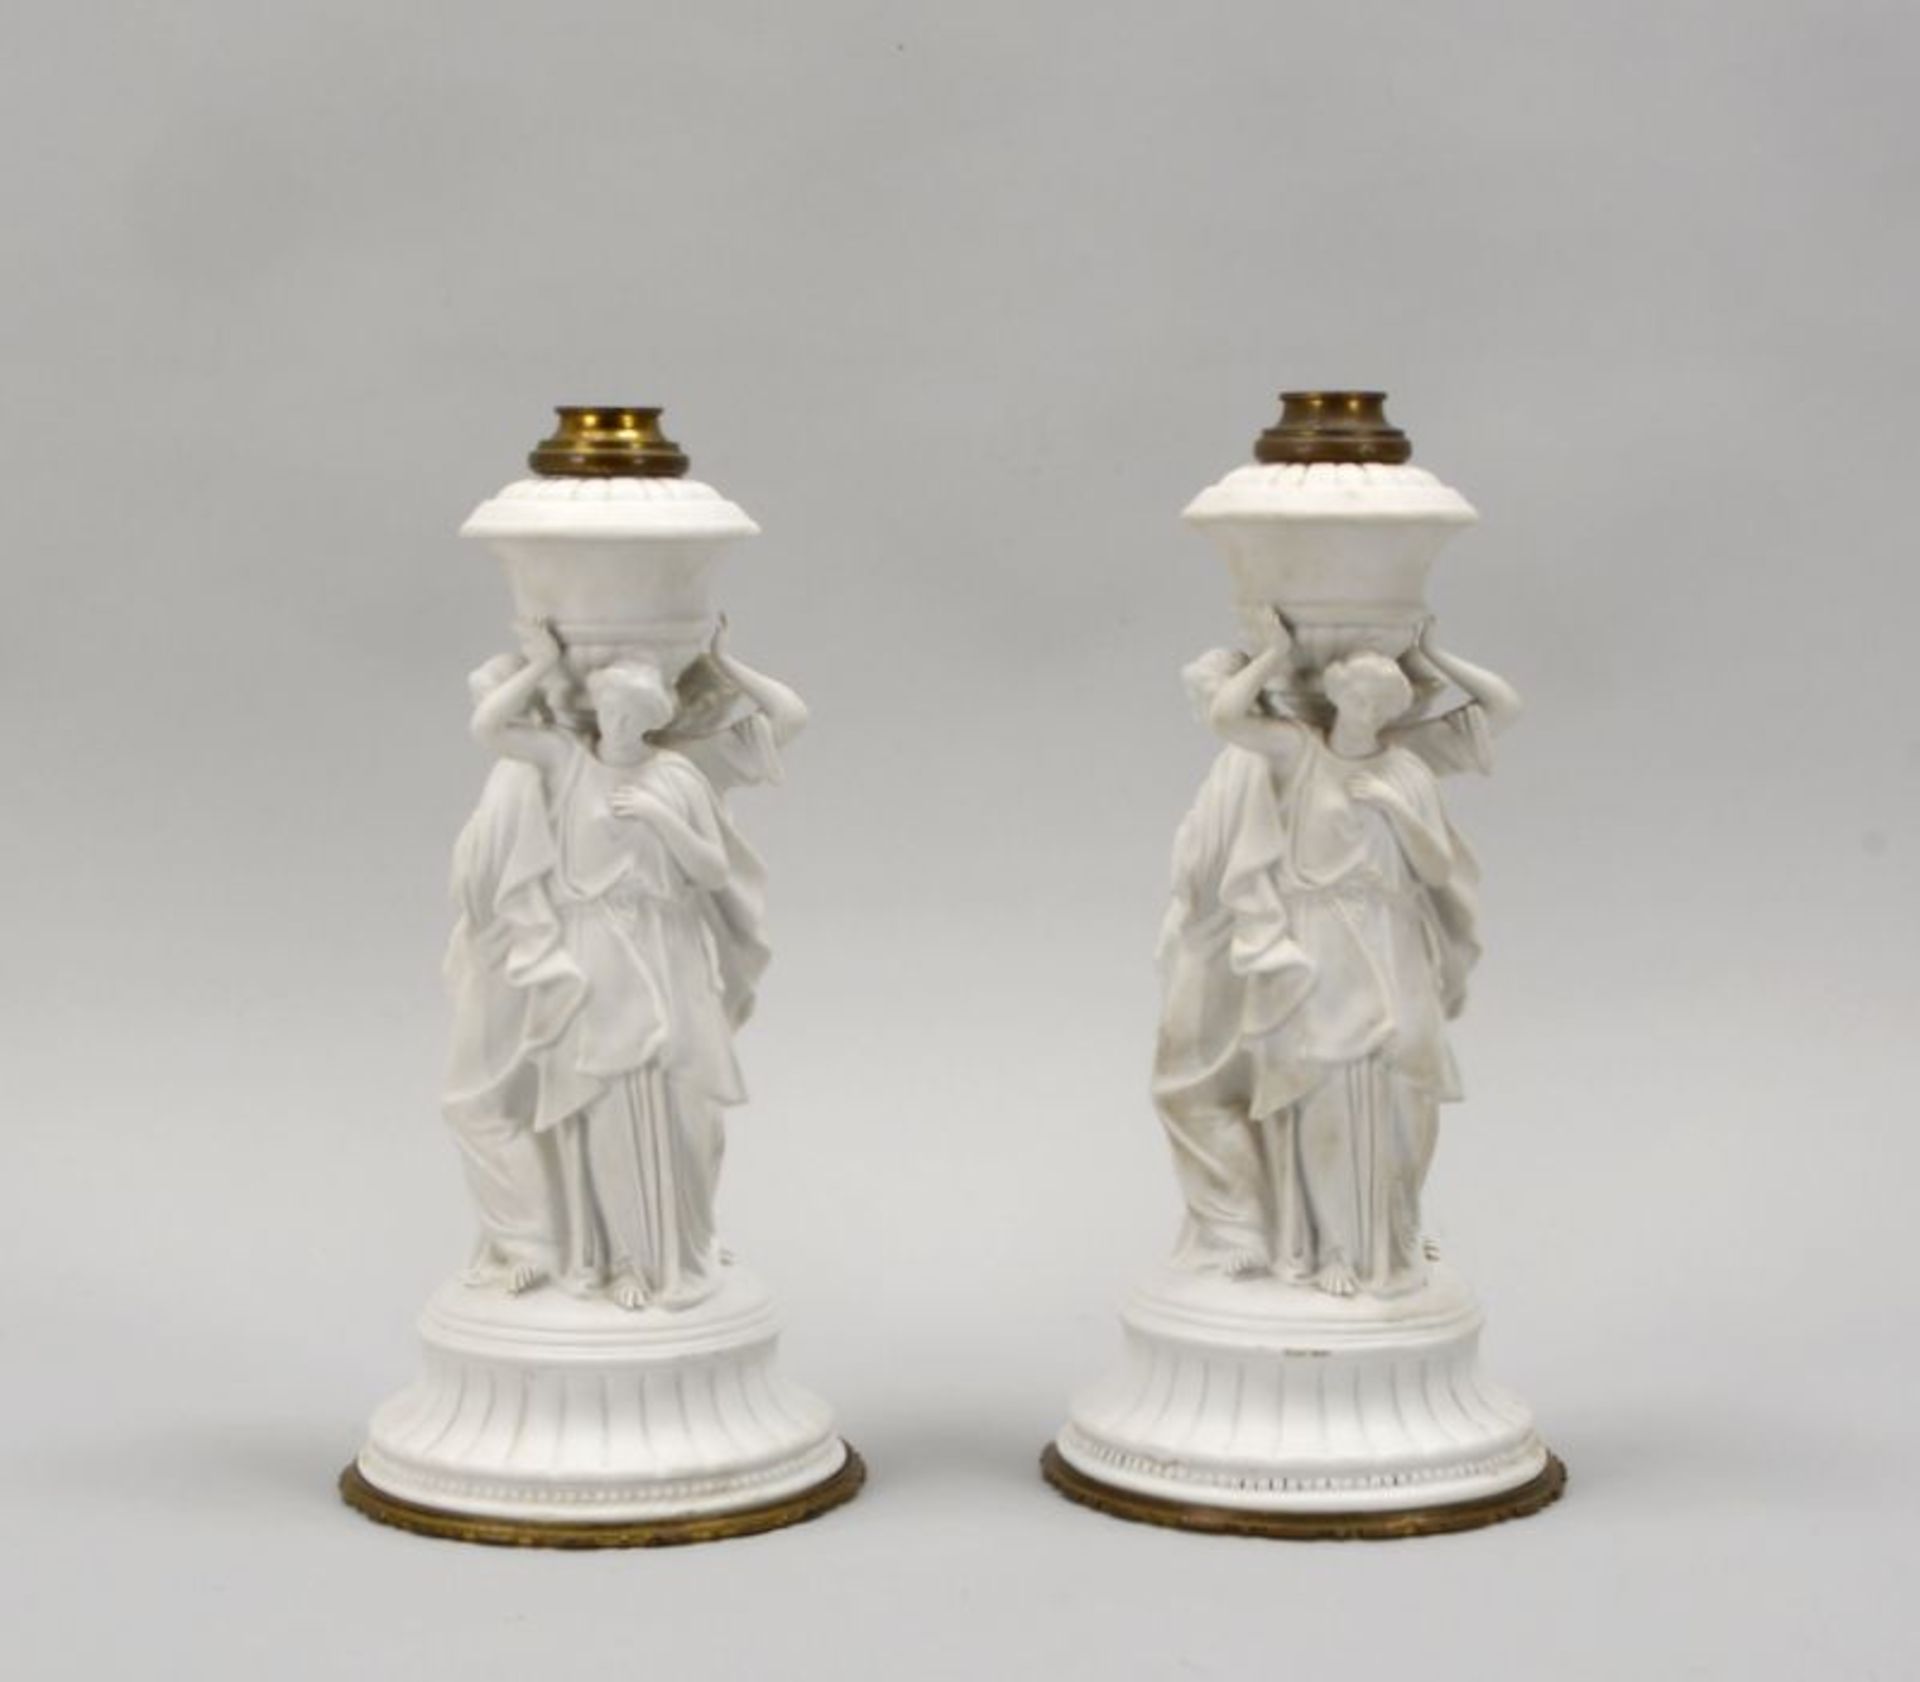 2 Biskuitporzellanfiguren, oben mit Metallmontierung (mit offenem Innengewinde - evtl. als Kerzenleu